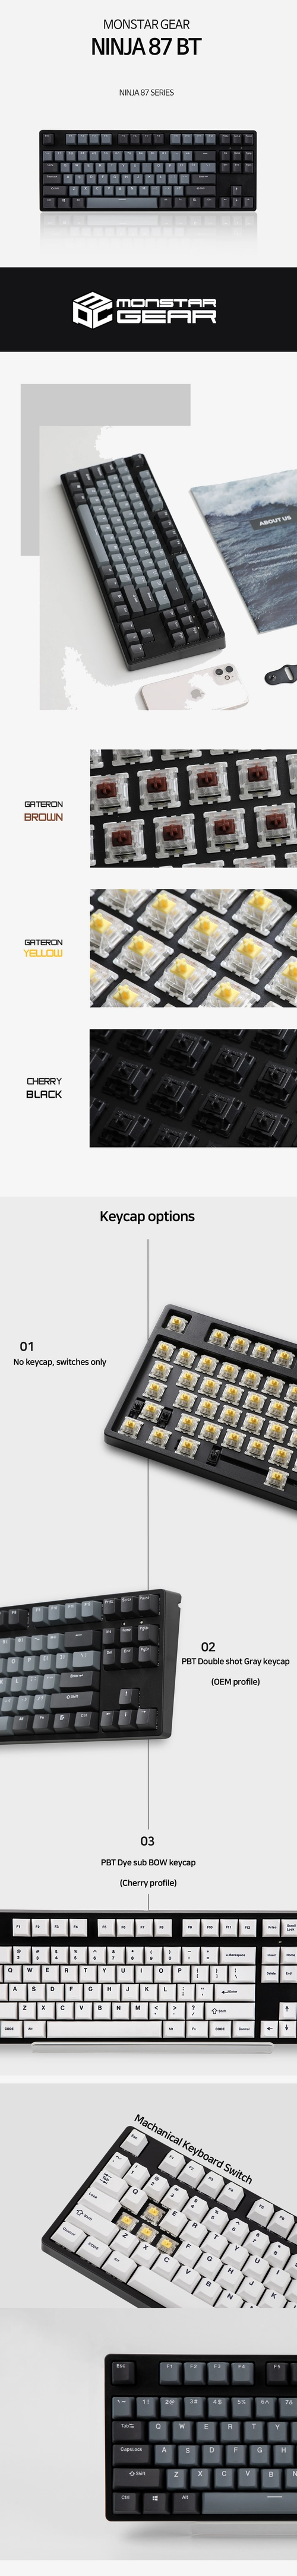 NINJA87BT Wired & wireless Hot-swap TKL keyboard(Black) : Monstargear